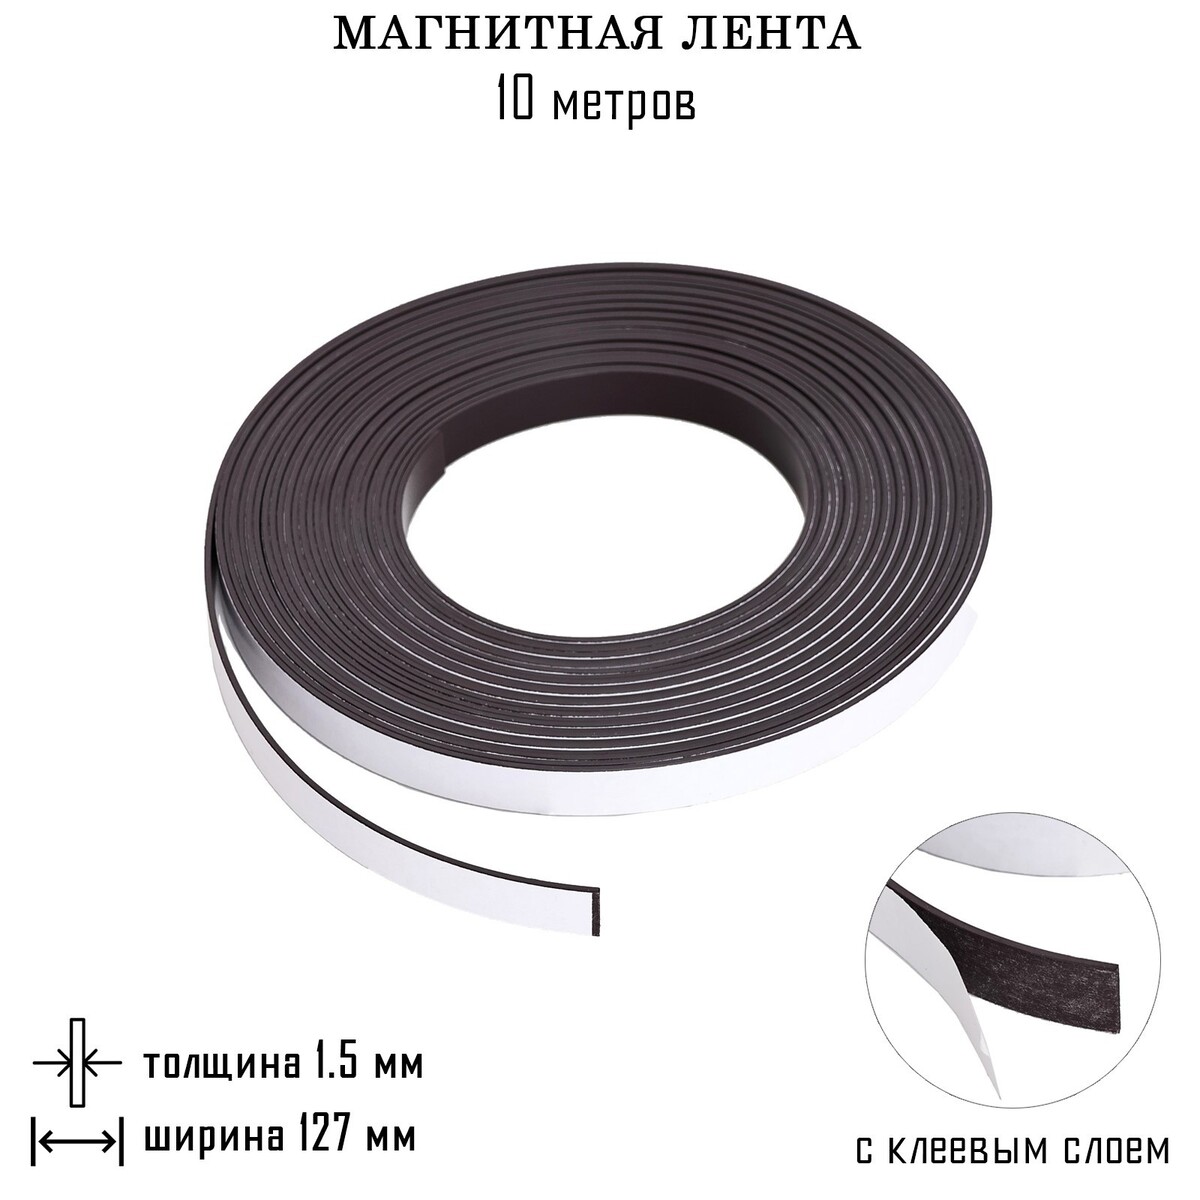 Магнитная лента, с клеевым слоем, 10 метров, толщина 1.5 мм, ширина 12.7 см магнитный винил с клеевым слоем а4 2 шт толщина 0 8 мм 21 х 29 7 см